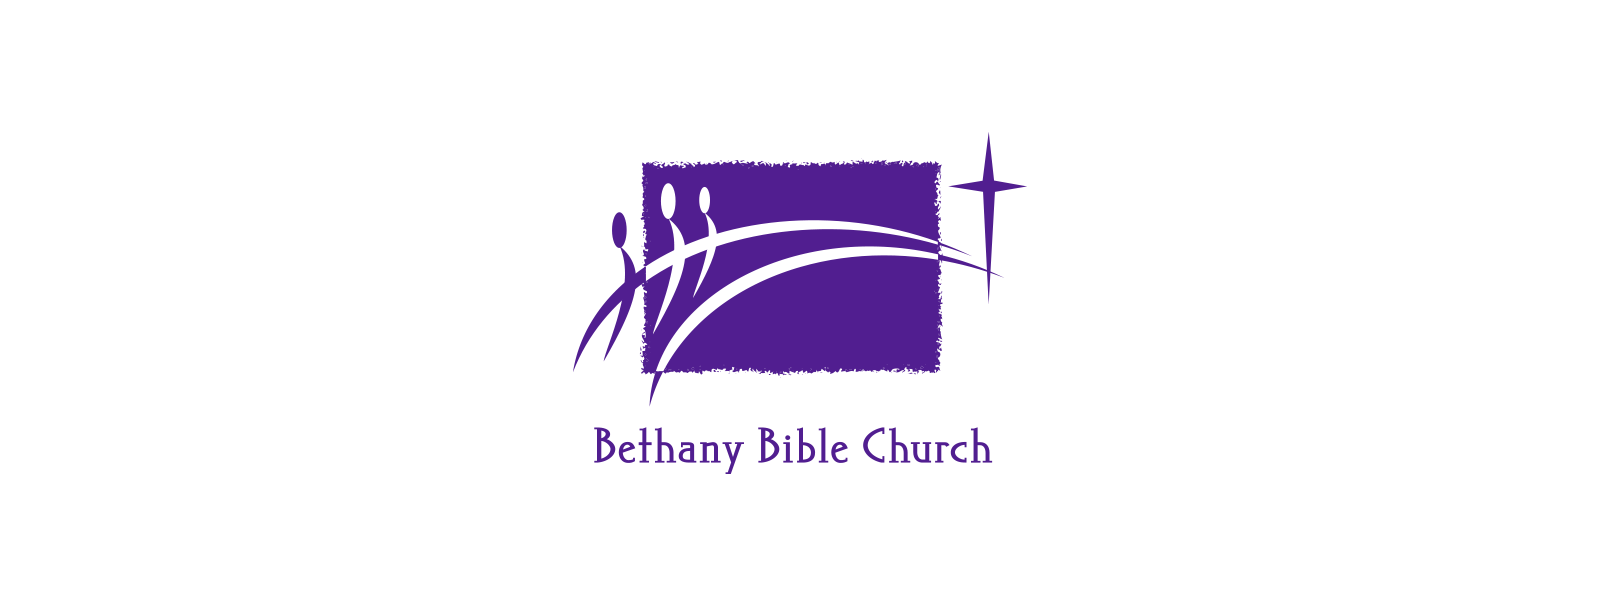 Bethany Bible Church logo